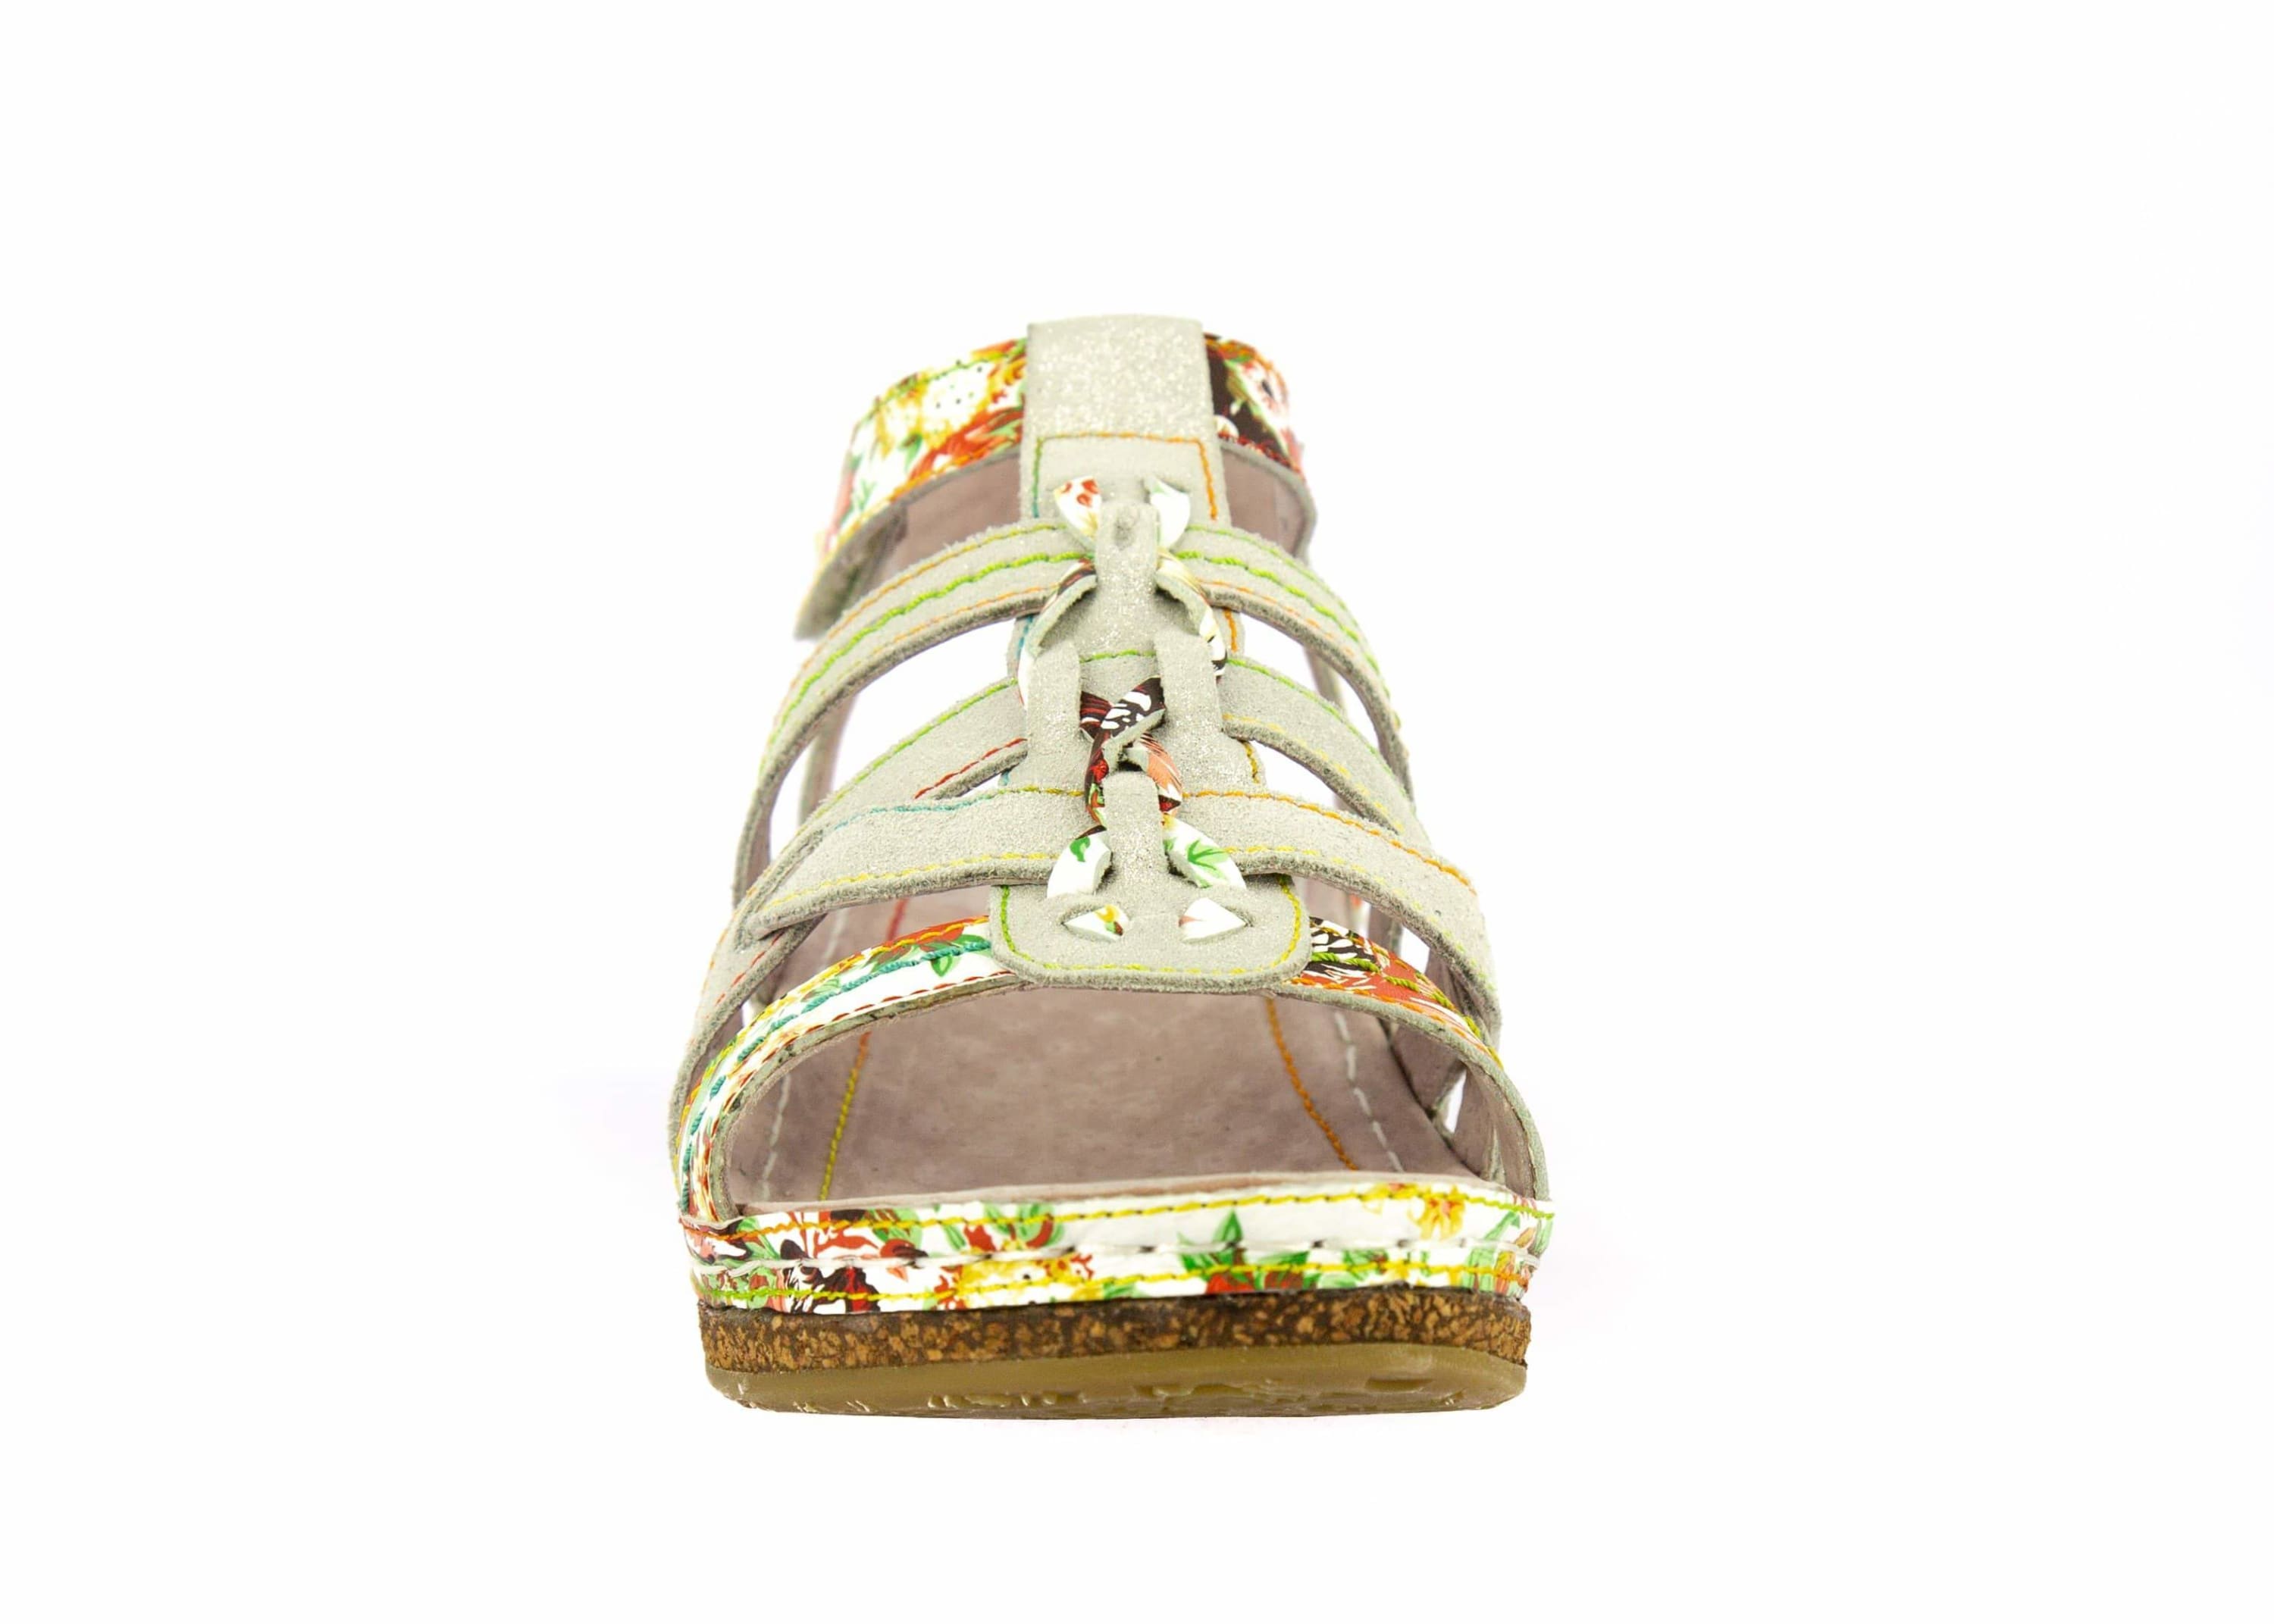 Shoe FACRAHO04 - Sandal